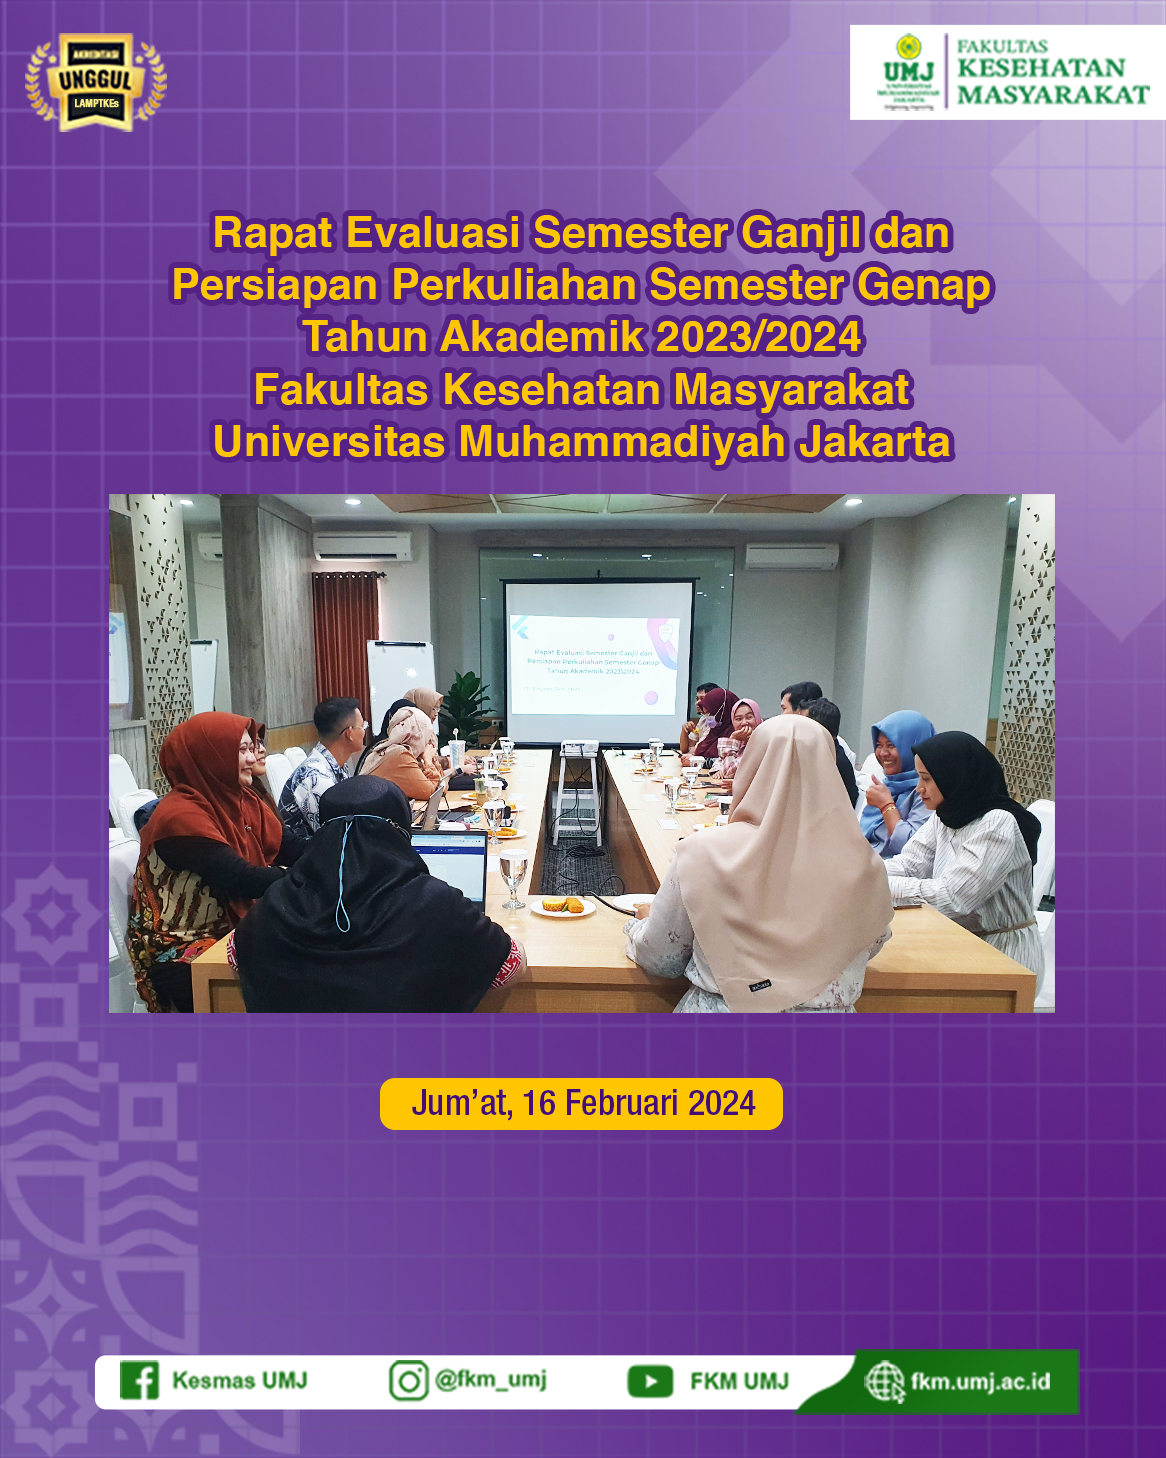 Rapat Evaluasi Semester Ganjil dan Persiapan Perkuliahan Semester Genap Tahun Akademik 2023/2024 di Fakultas Kesehatan Masyarakat Universitas Muhammadiyah Jakarta